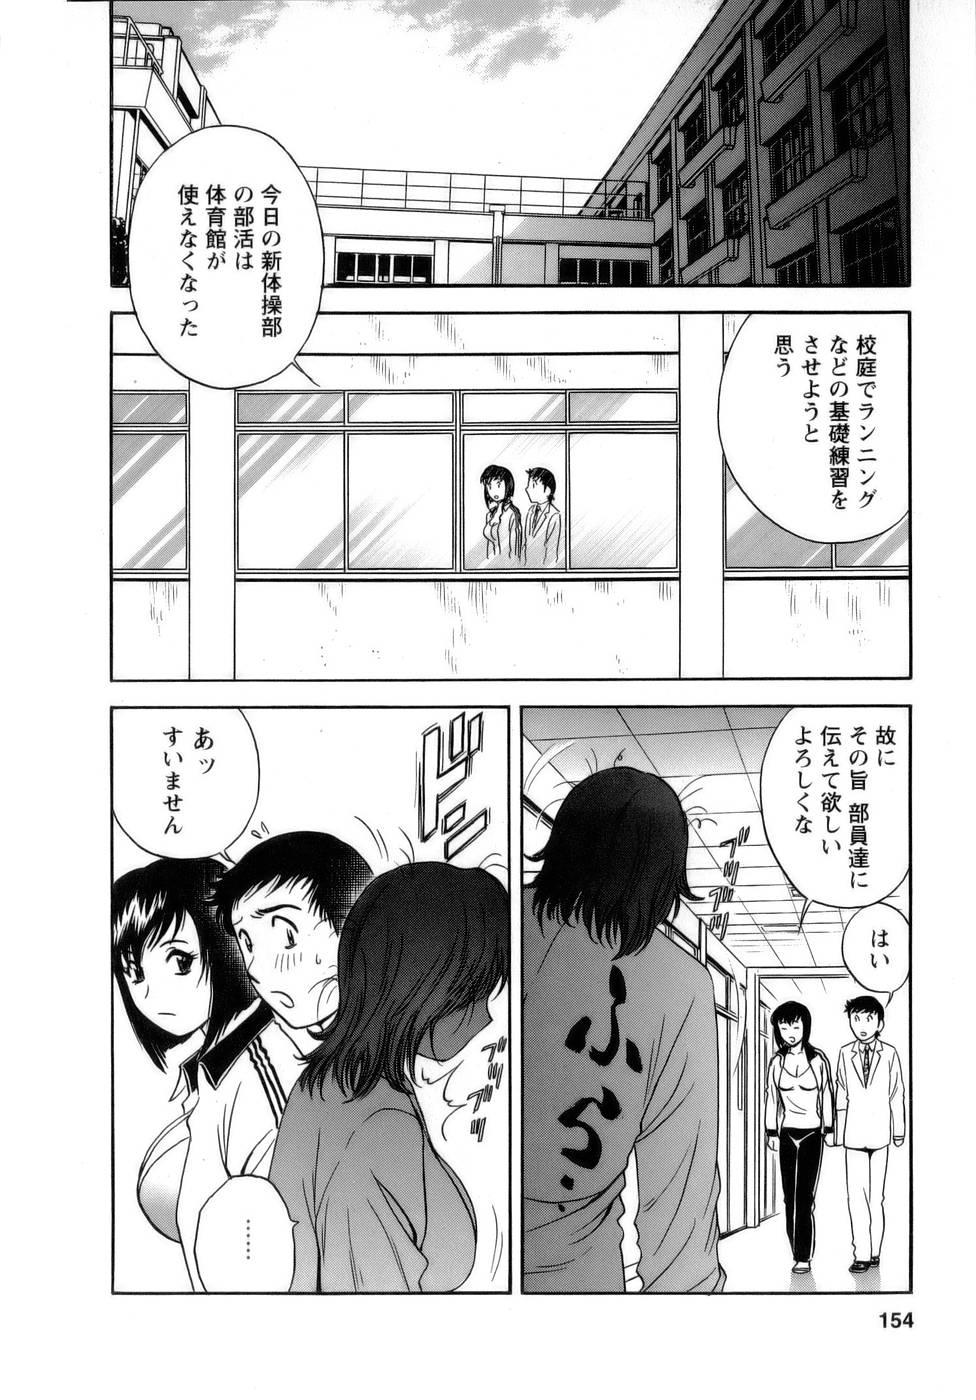 [Hidemaru] Mo-Retsu! Boin Sensei (Boing Boing Teacher) Vol.1 153